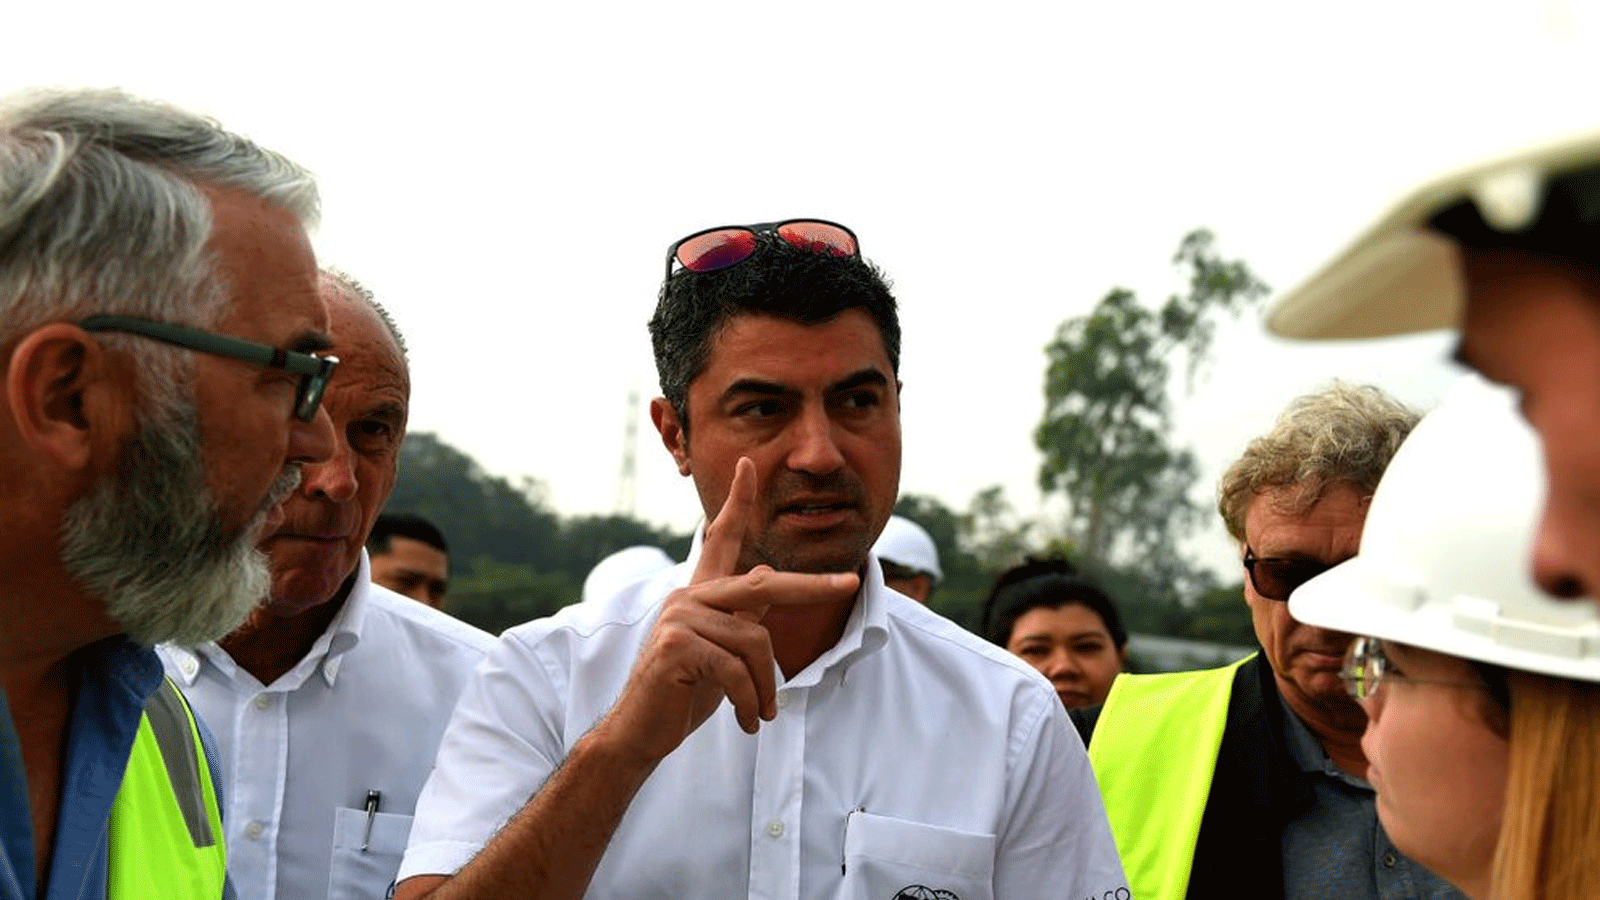 مدير سباق الفورمولا 1 مايكل ماسي يتفقد بناء مضمار سباق الفورمولا واحد غراند بريكس في هانوي في ديسمبر\كانون الأول 2019